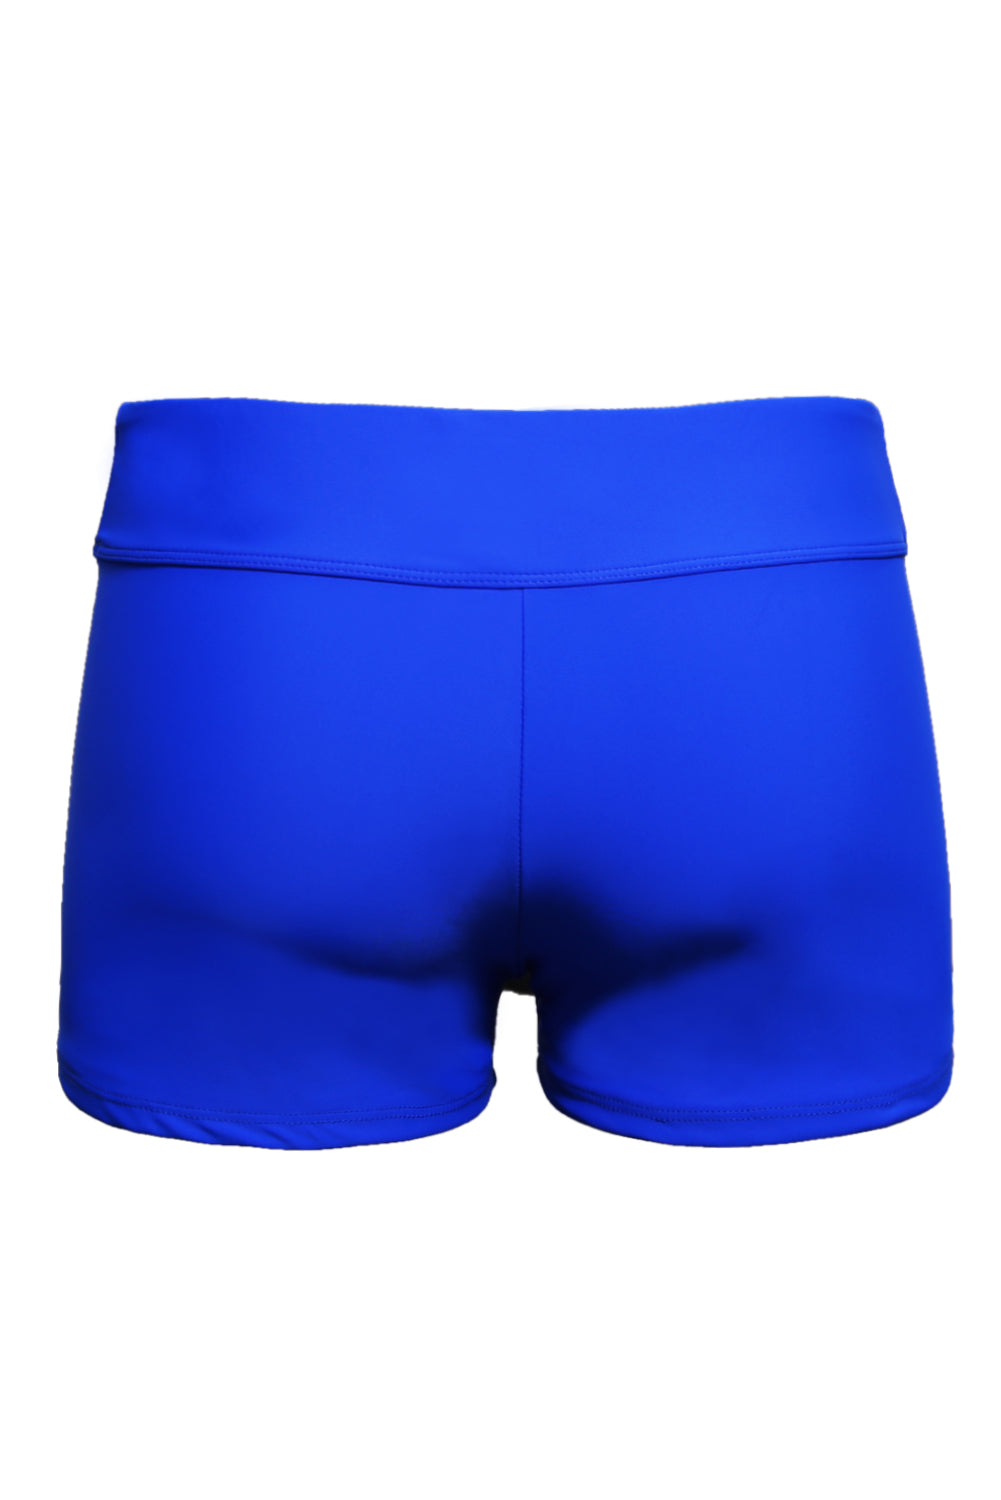 Pantaloncini inferiori del costume da bagno con cintura larga blu reale